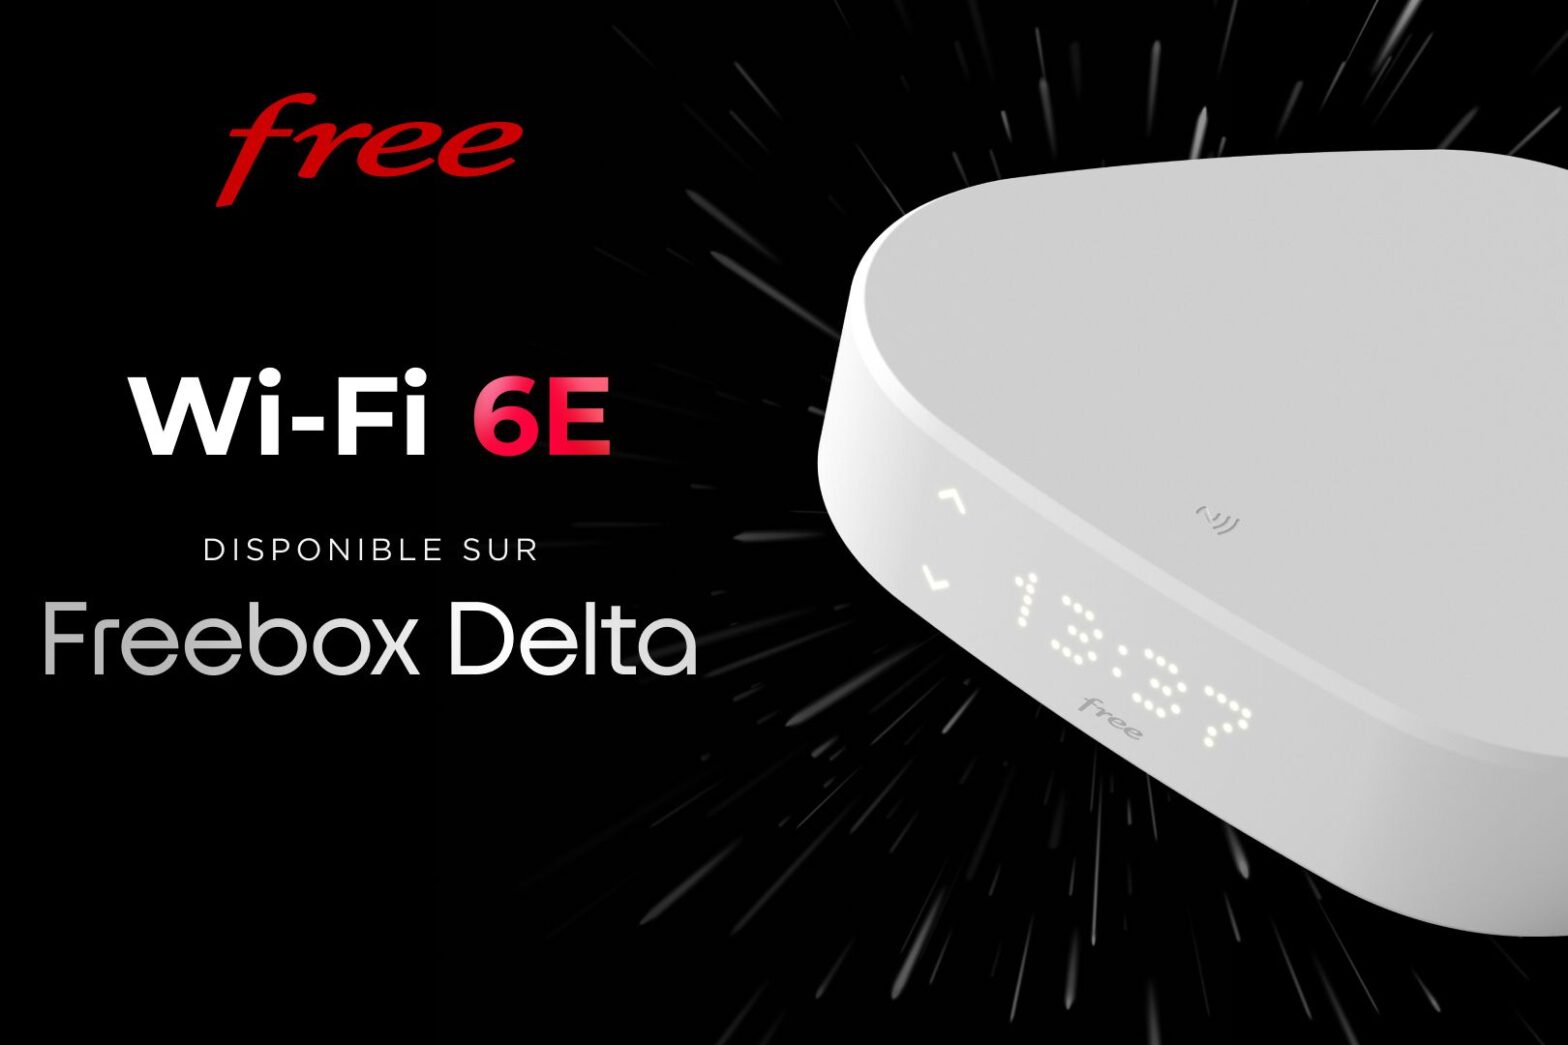 Free lance le Wi-Fi 6E